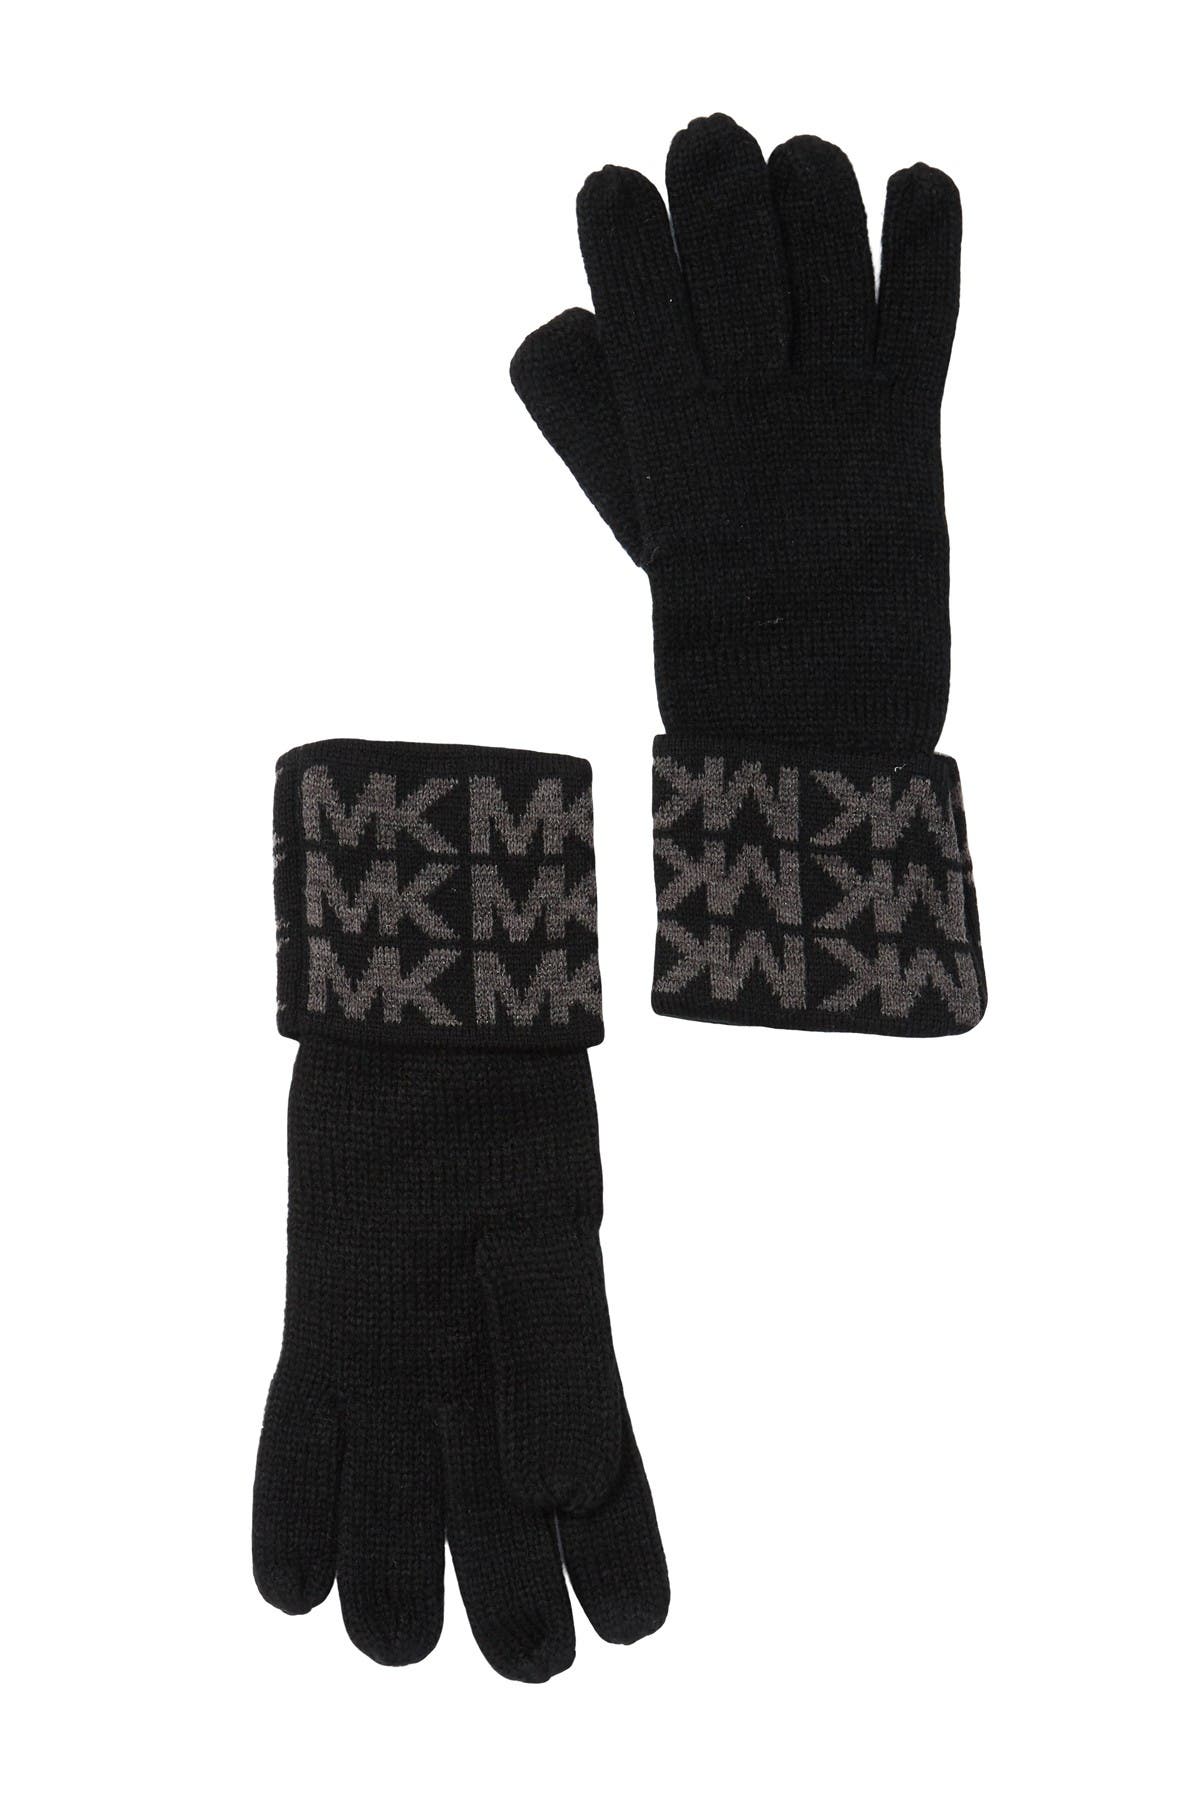 michael kors winter gloves